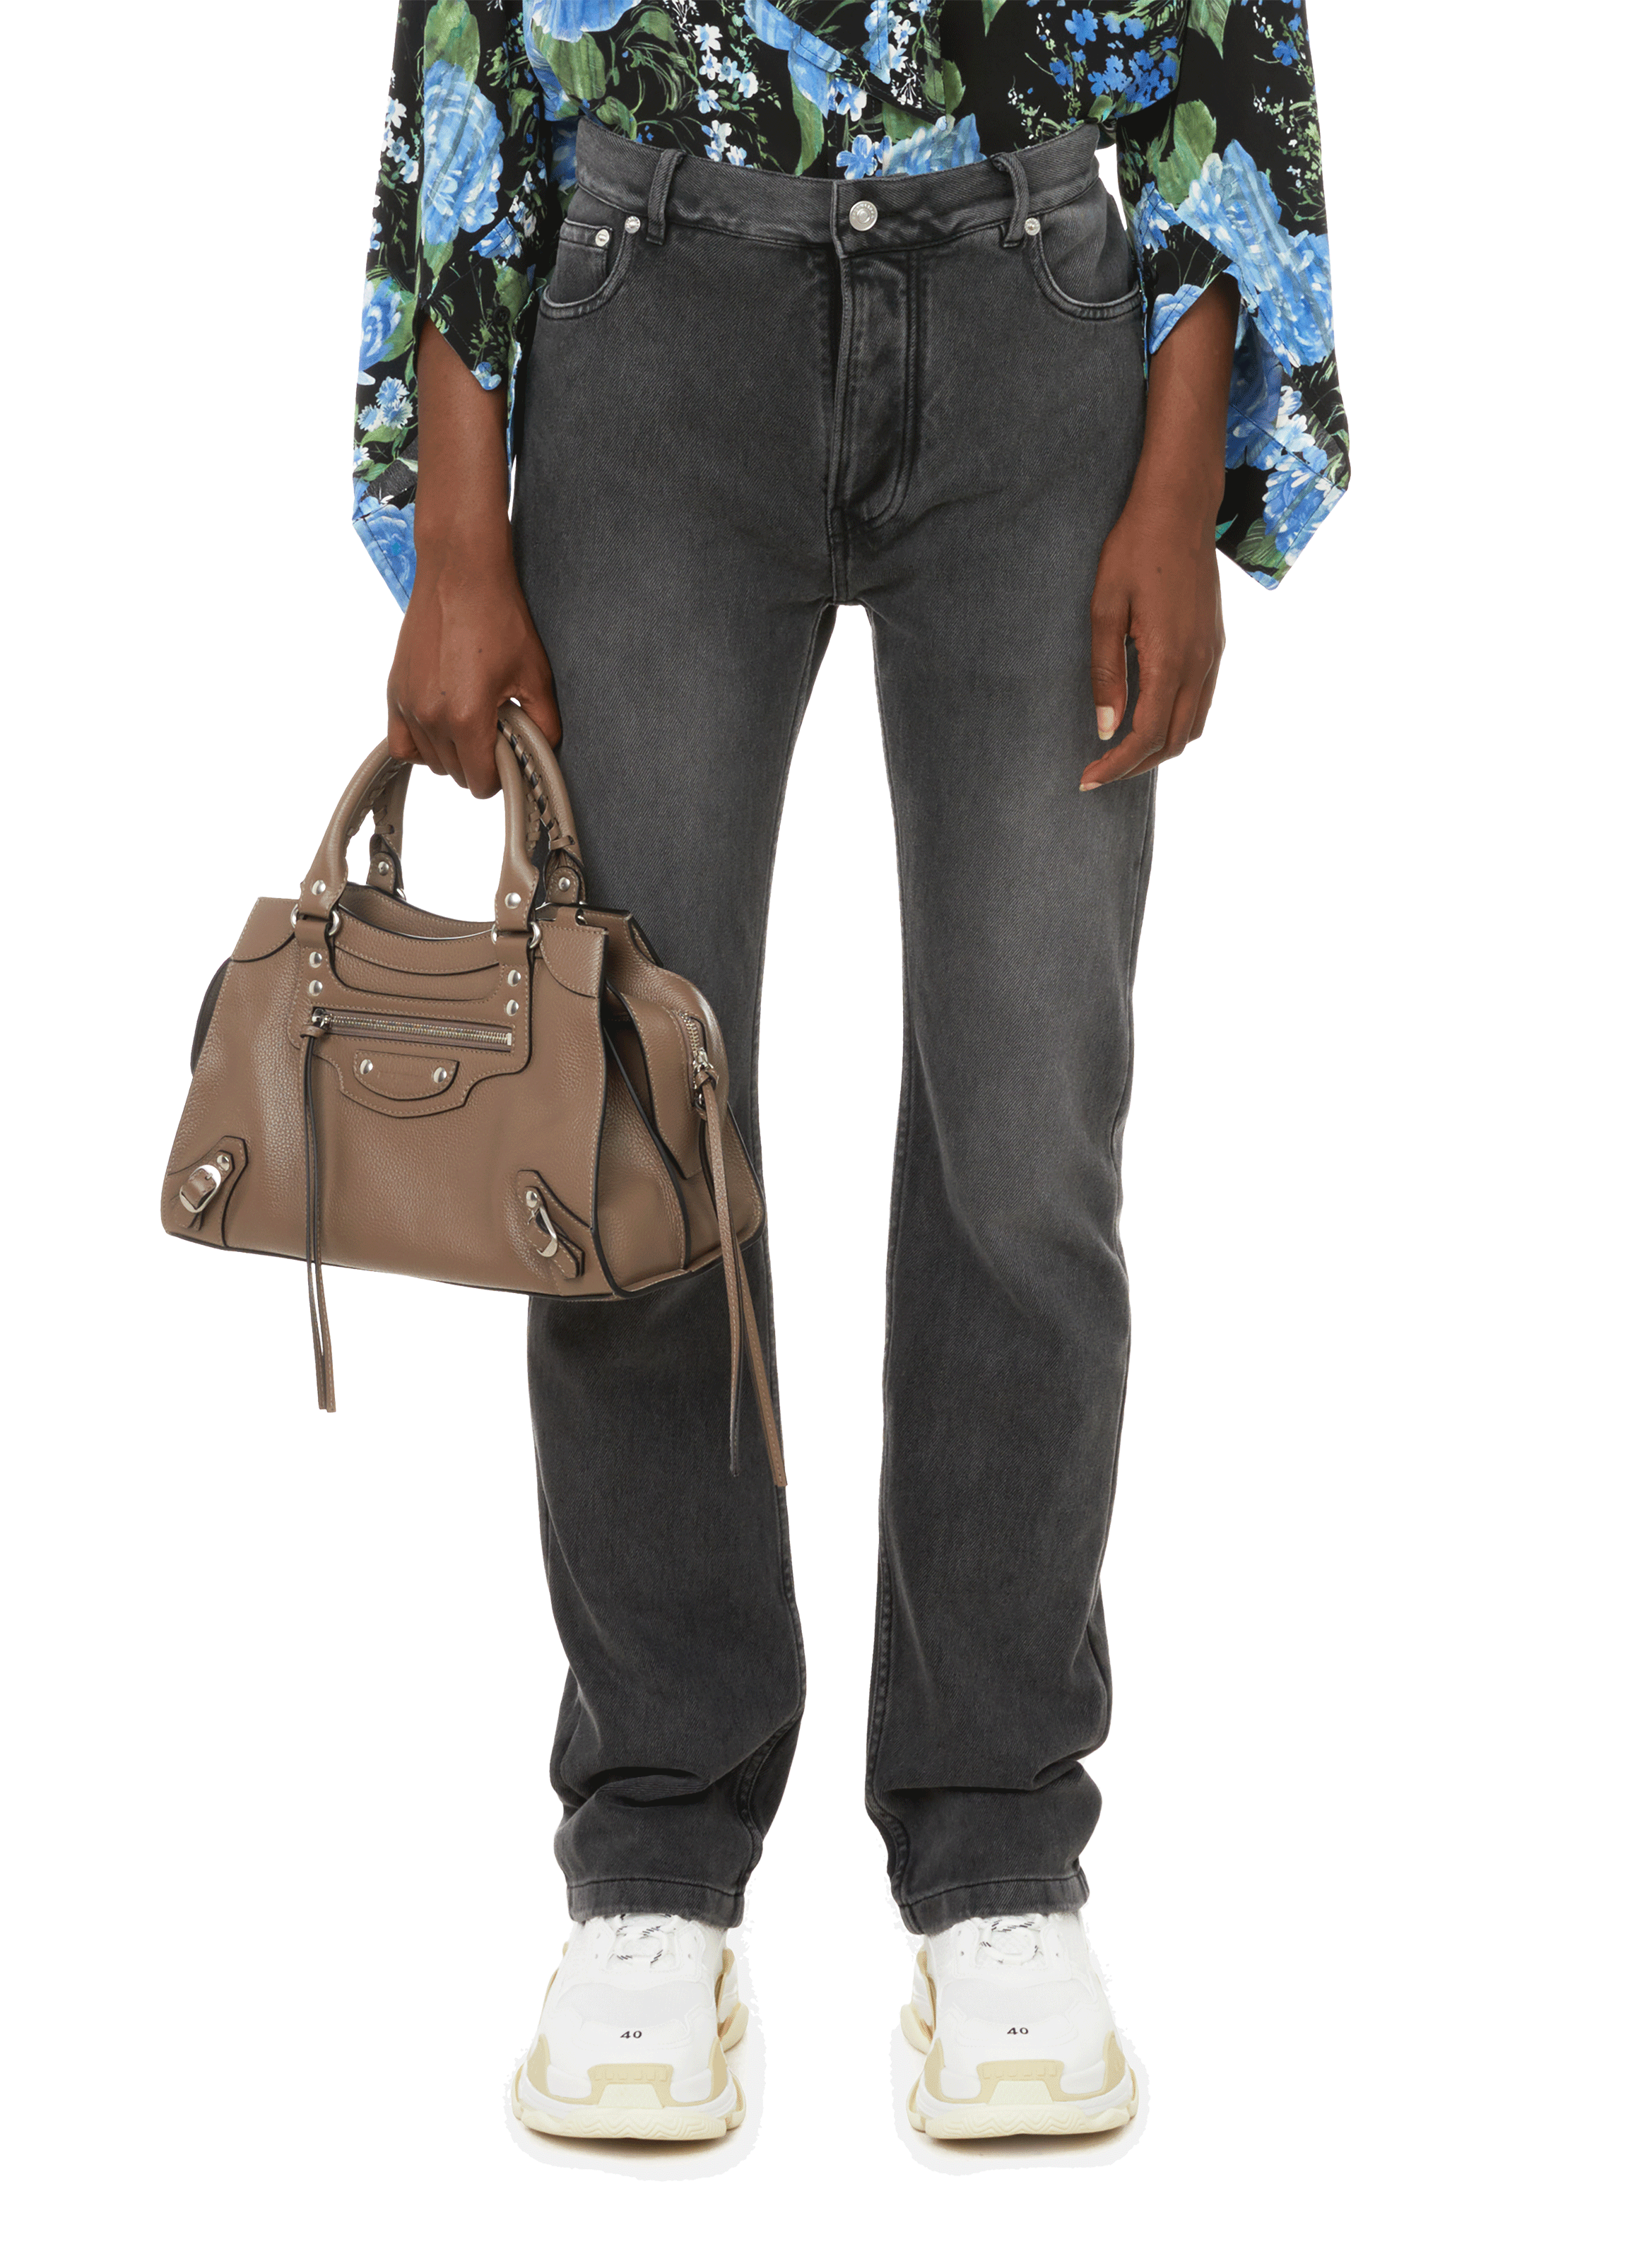 Jean 724 High-Rise Slim Straight en coton stretch Printemps.com Femme Vêtements Pantalons & Jeans Jeans Slim 